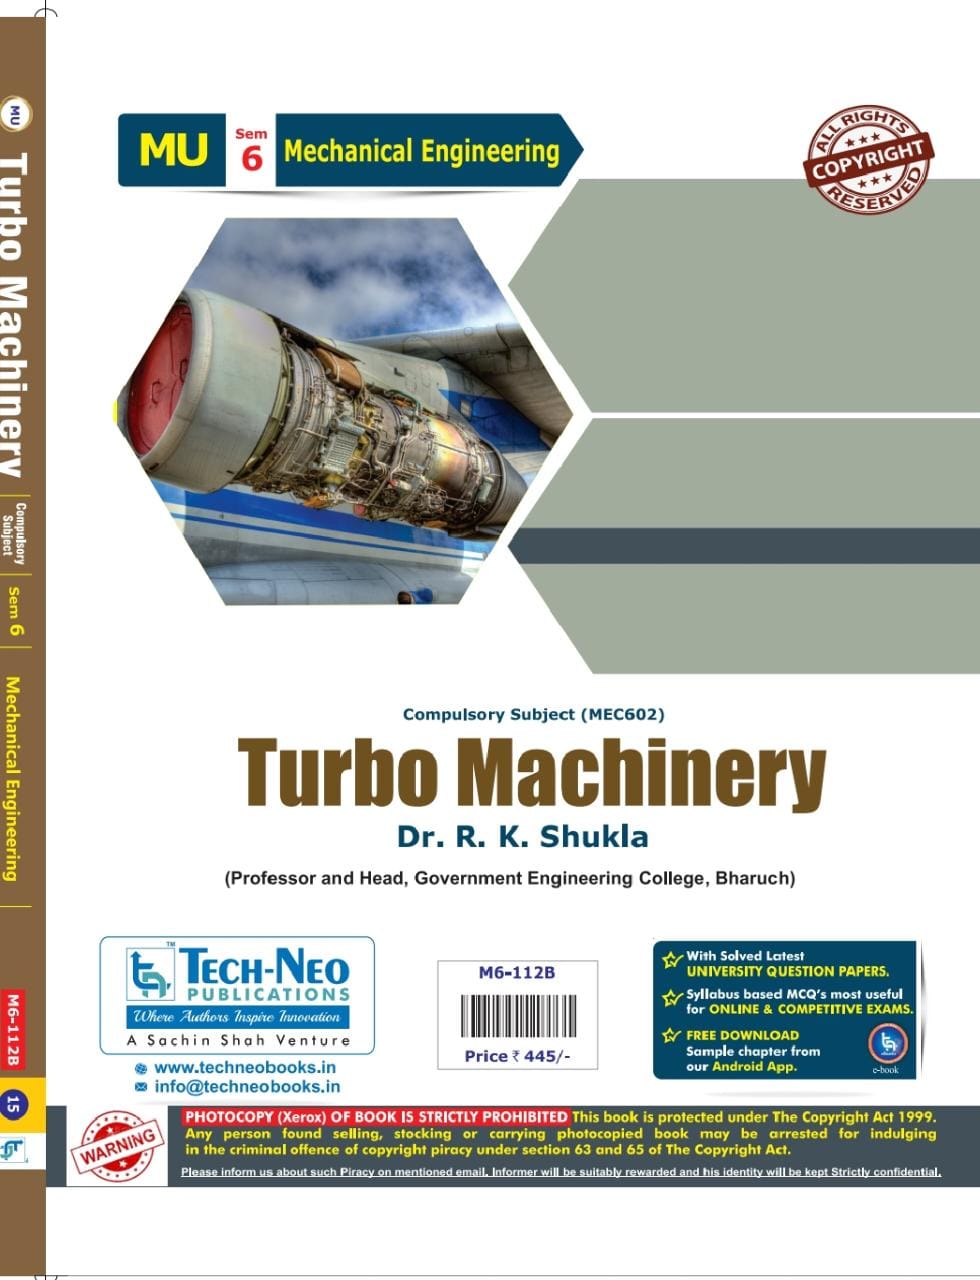 Turbo Machinery